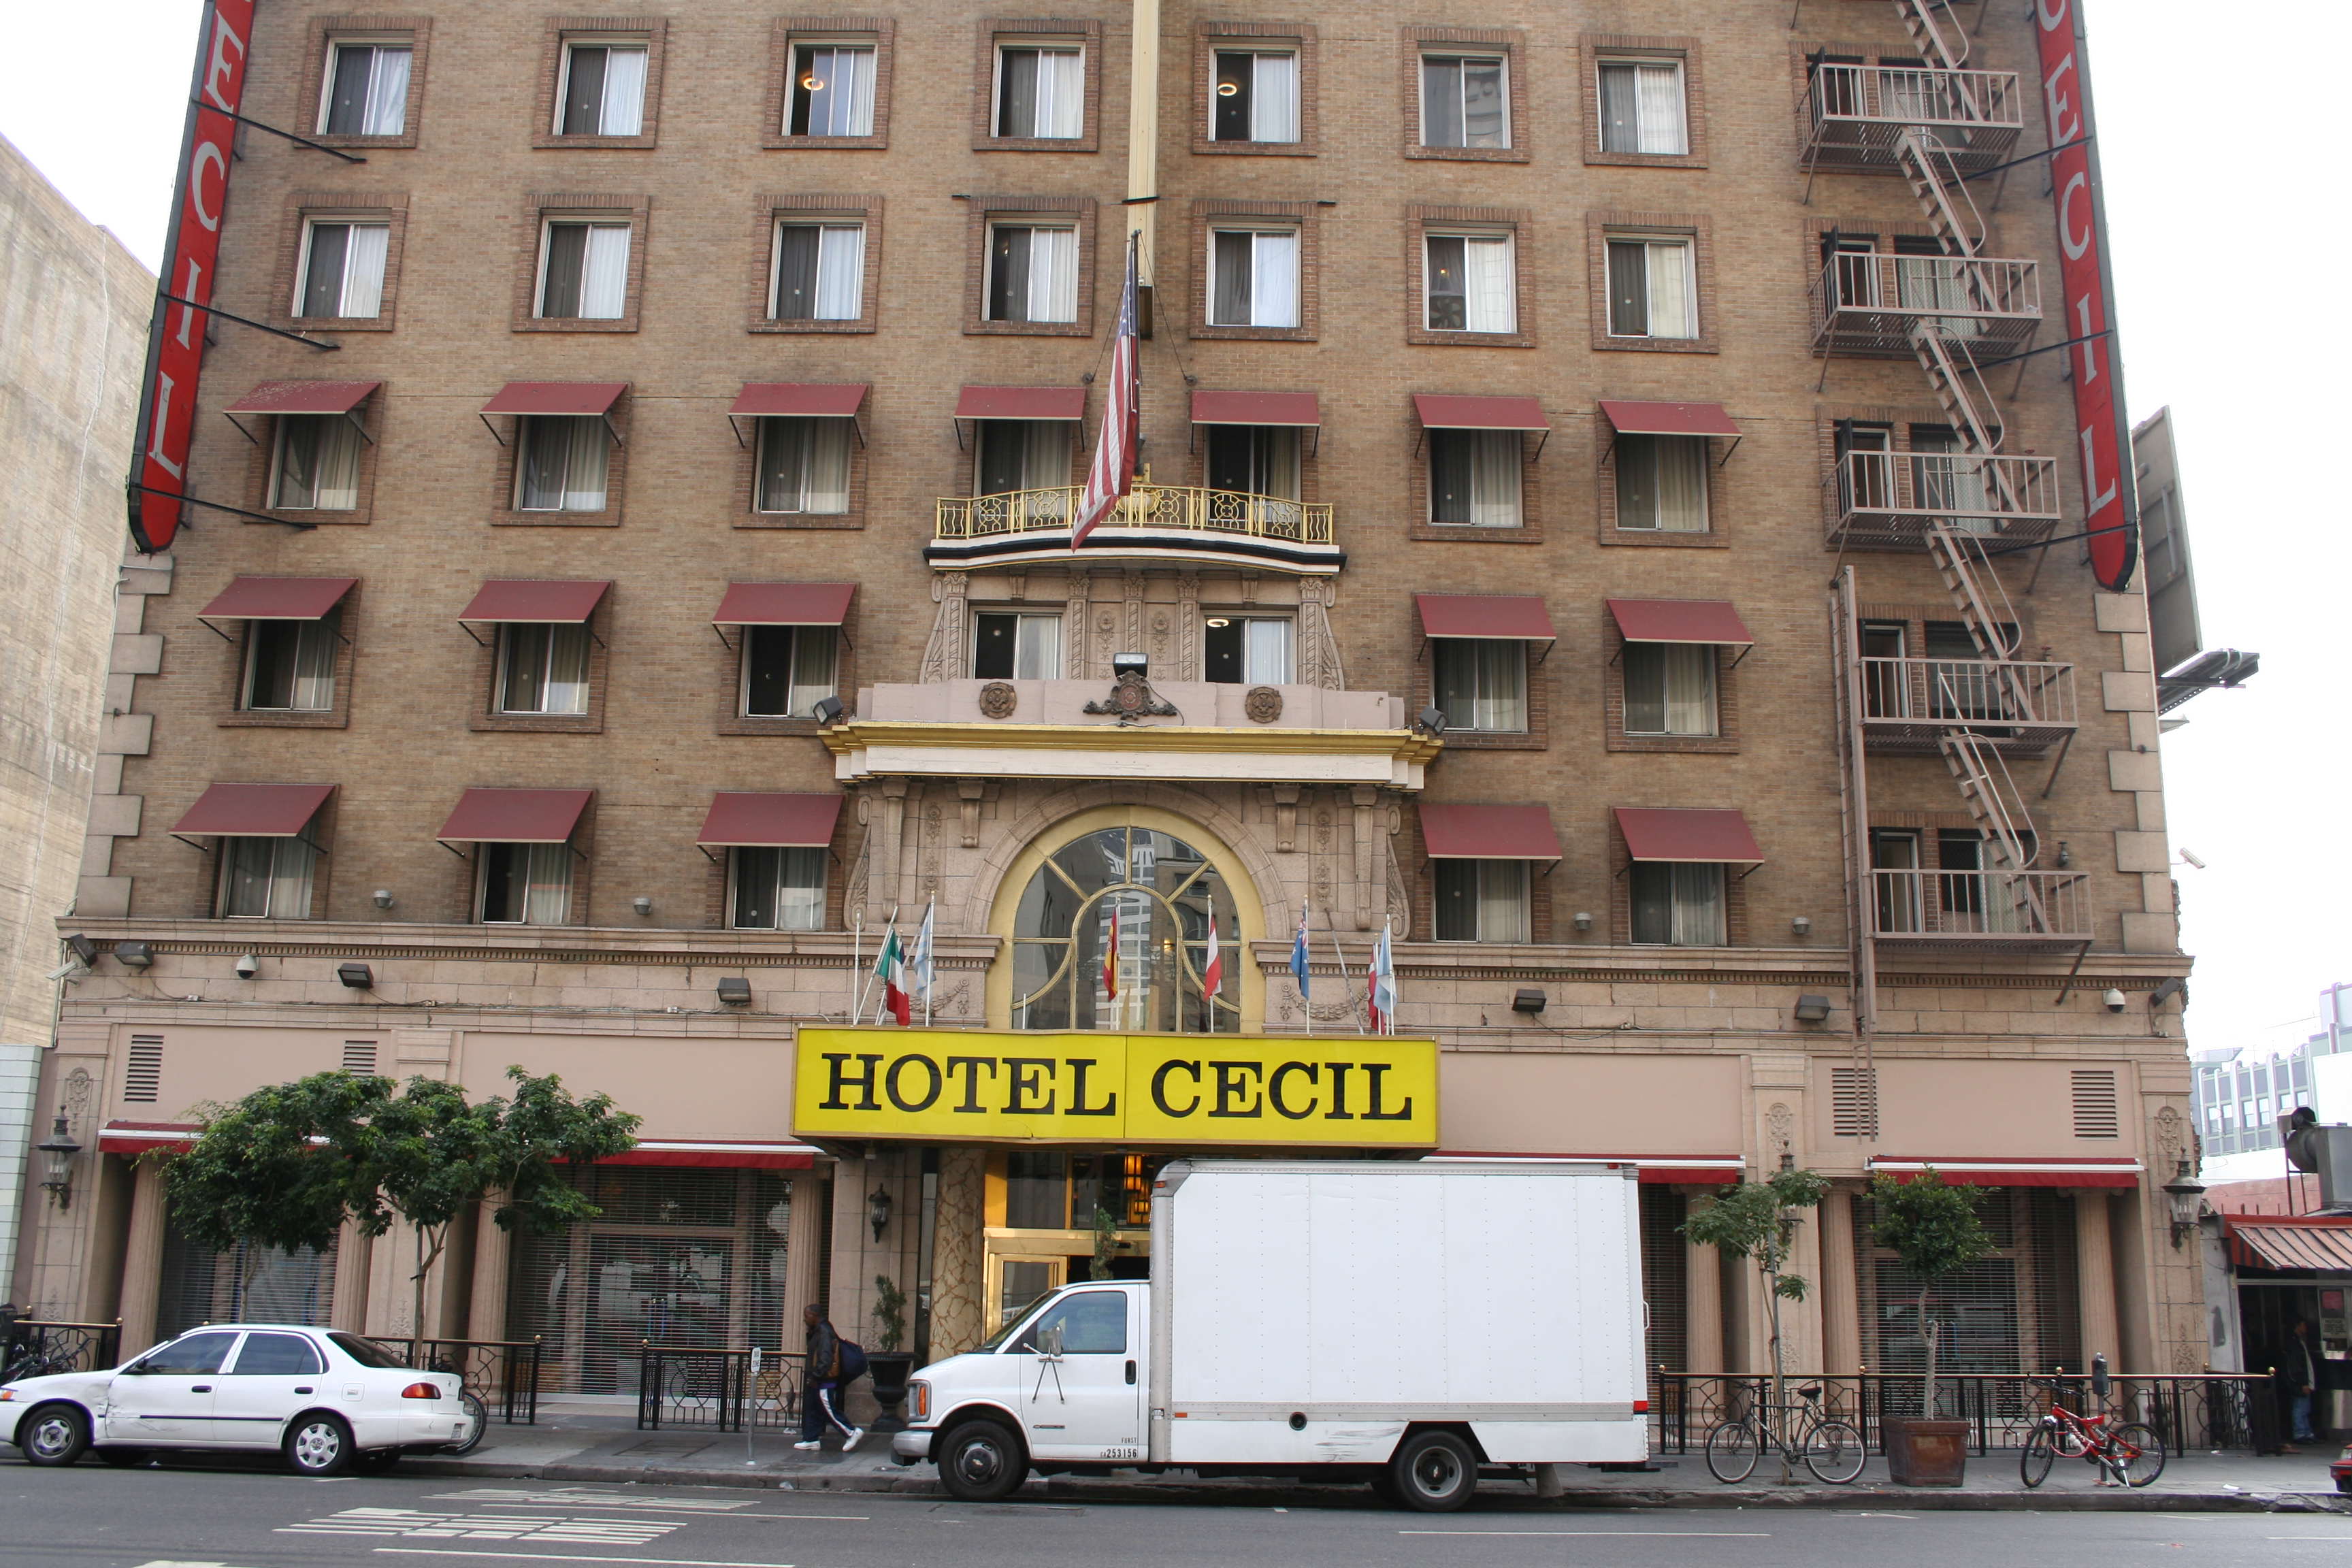 这间旅馆是全世界最会「杀人」的索命旅馆！没想到蓝可儿命案在这旅馆算是最不知名的呢！